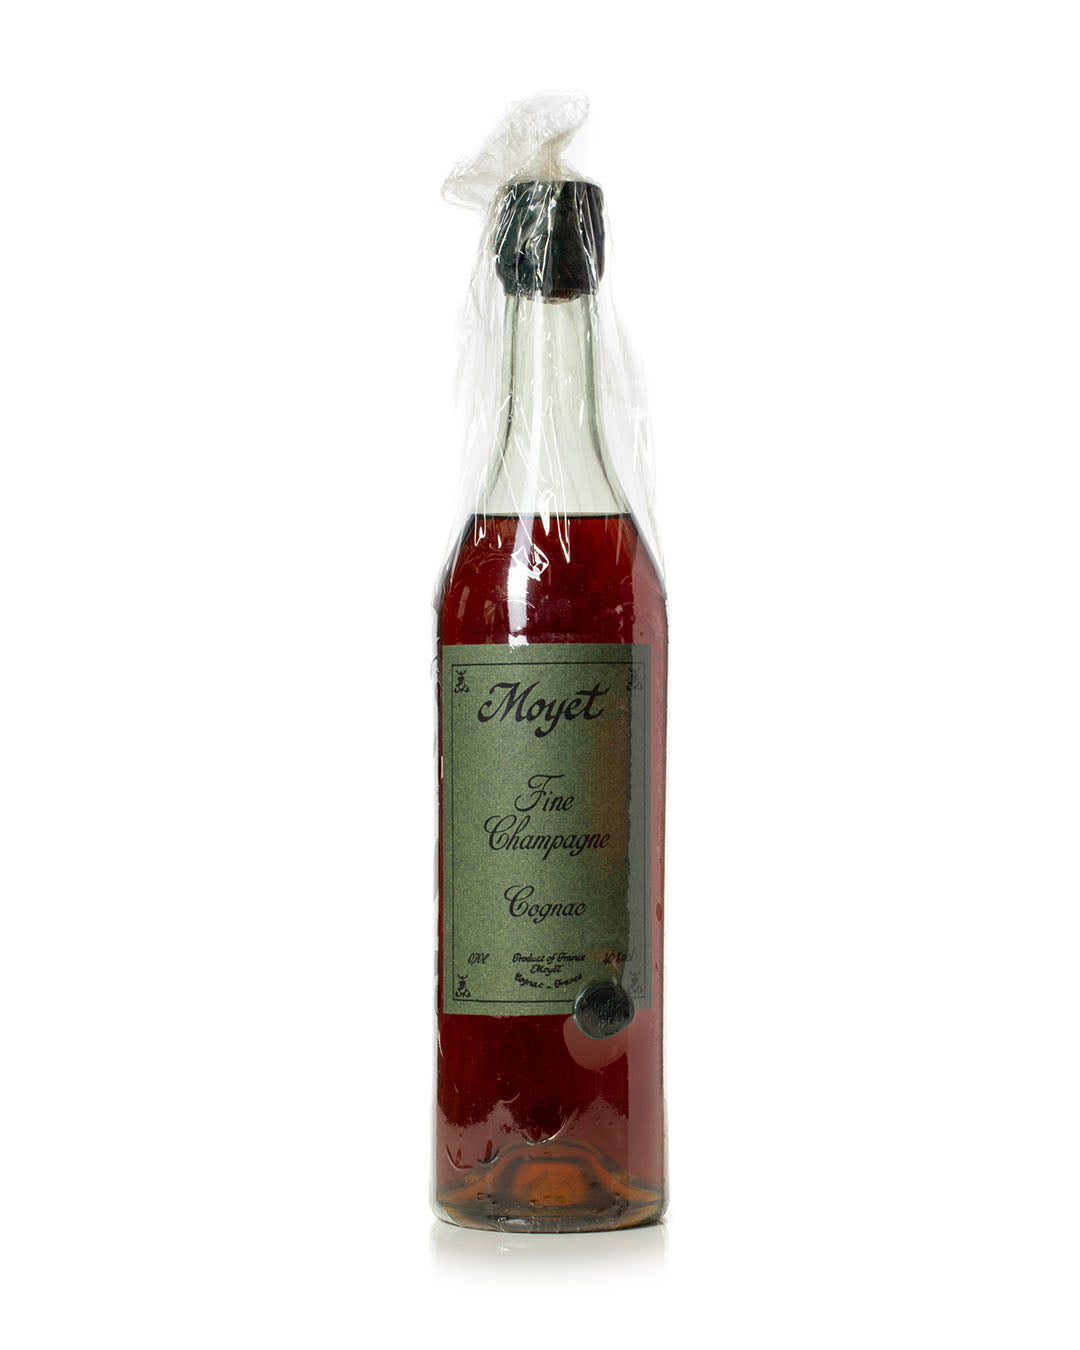 Moyet 1864 Fine Champagne Cognac – Mark Littler